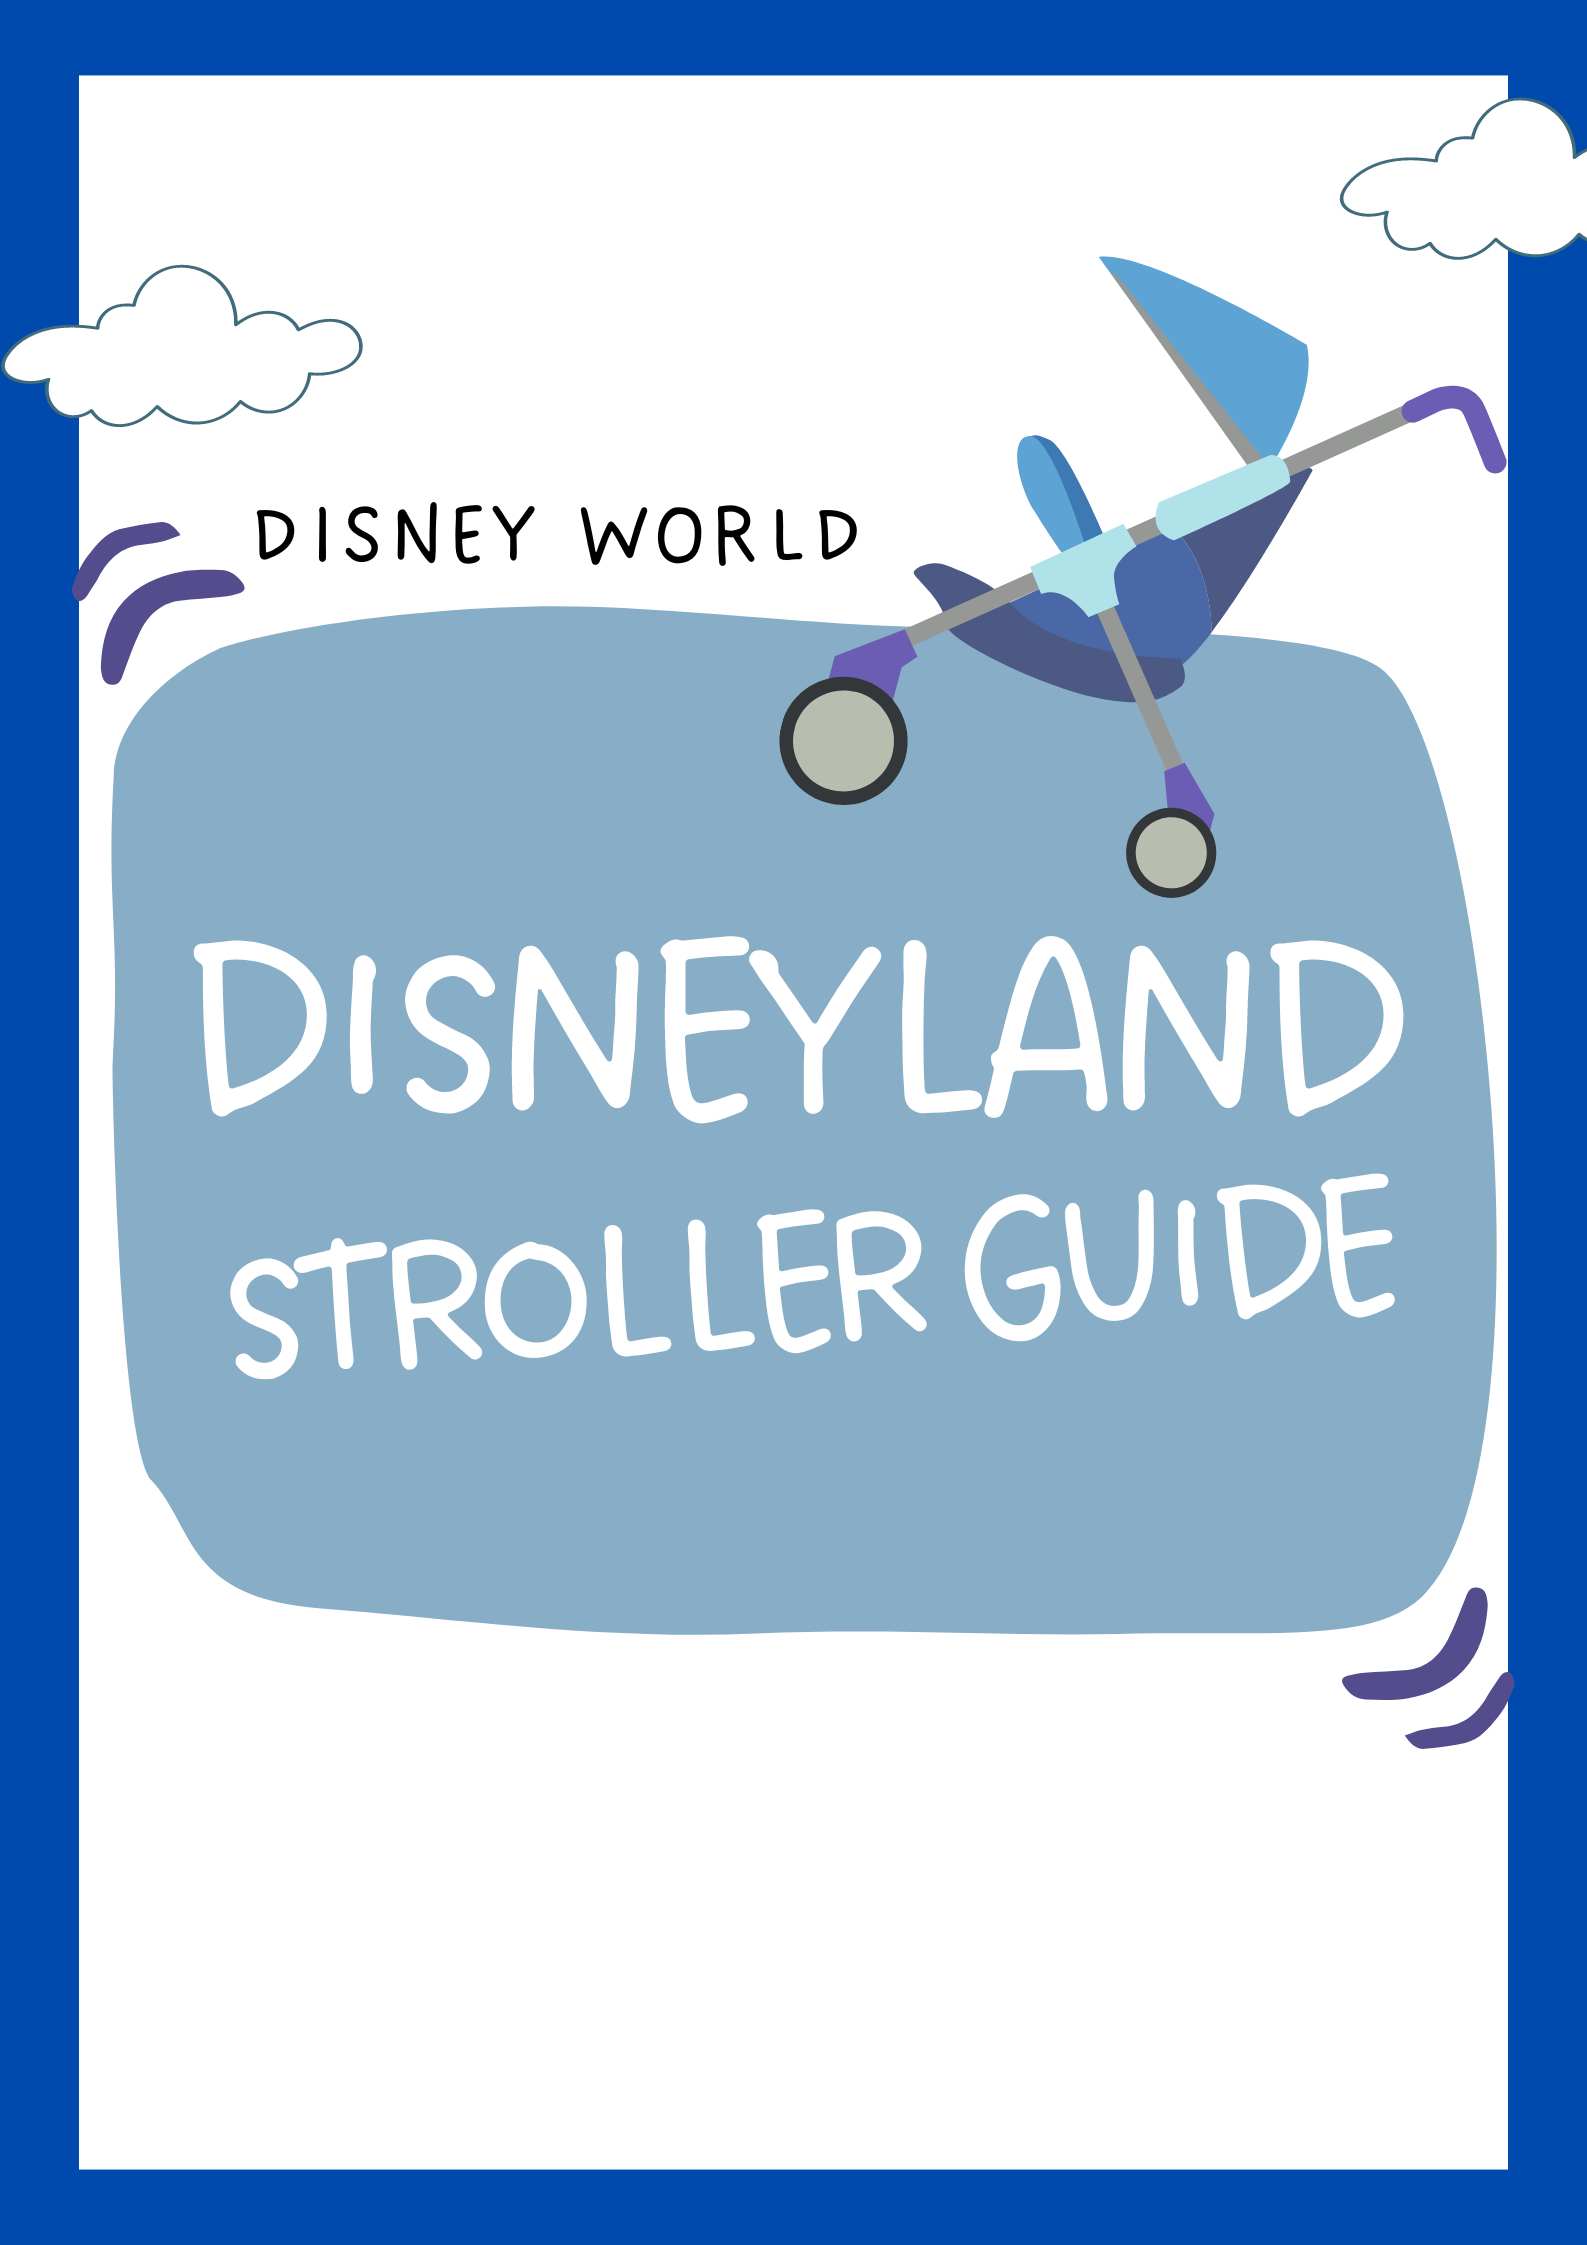 Disneyland stroller guide download image